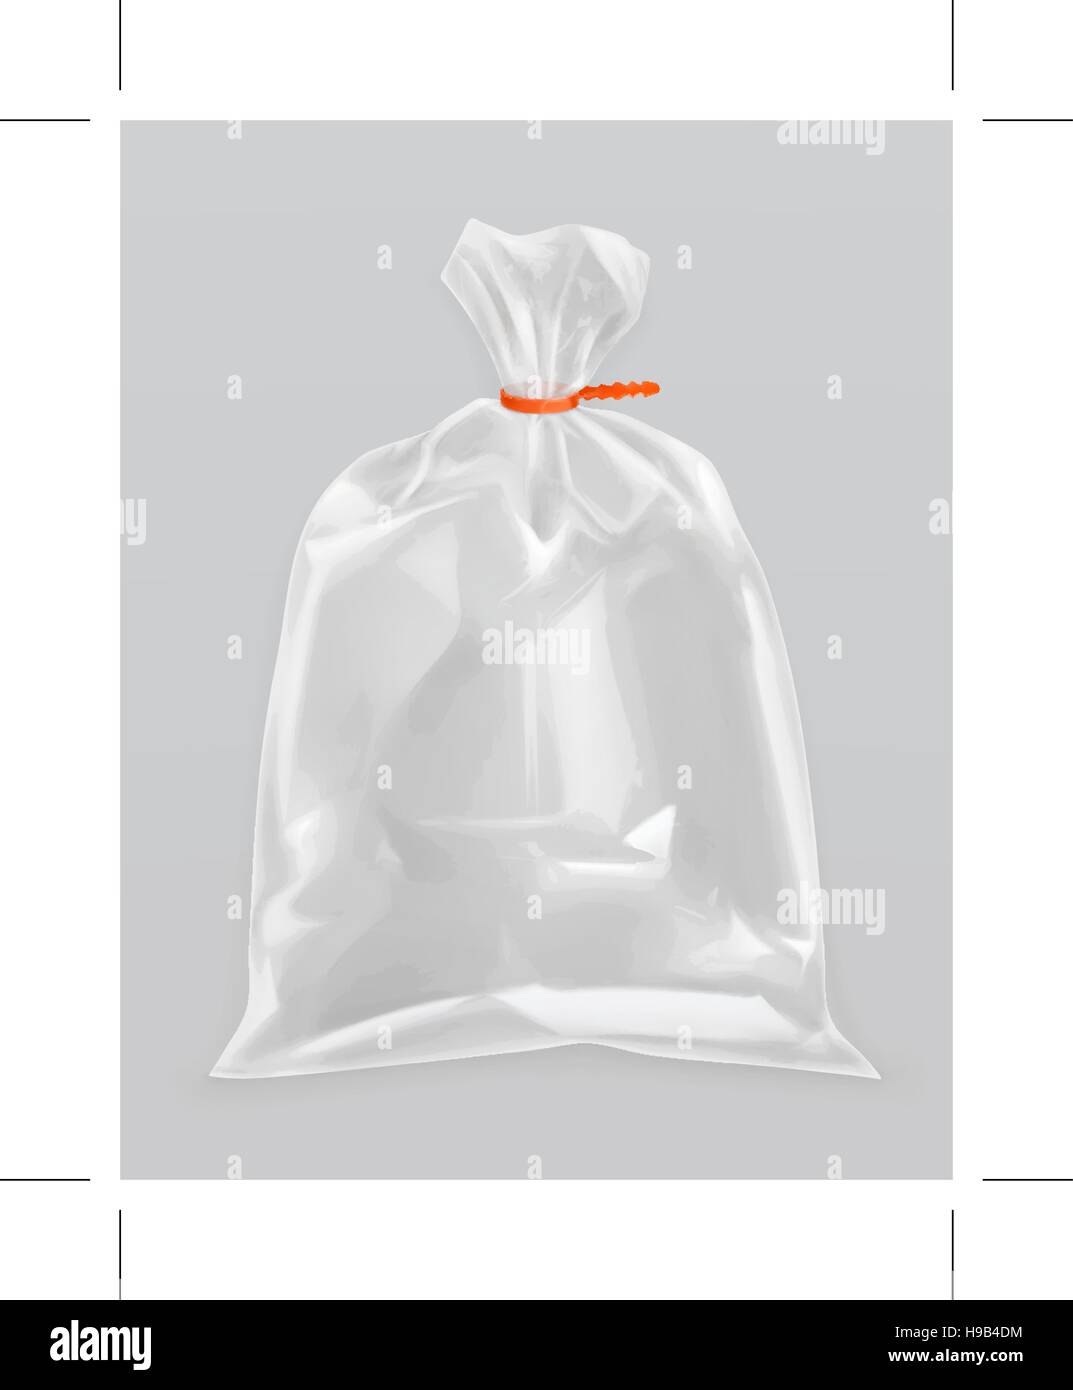 Hintergrund der Kunststofffolie. Modell eines Zellophan-Beutels, schwarze  Polyethylenfolie für Verpackung und Verpackung. Dehnbares pvc-Band, Packung  oder Beutel mit Falten, Vektorrealistische Illustration Stock-Vektorgrafik  - Alamy